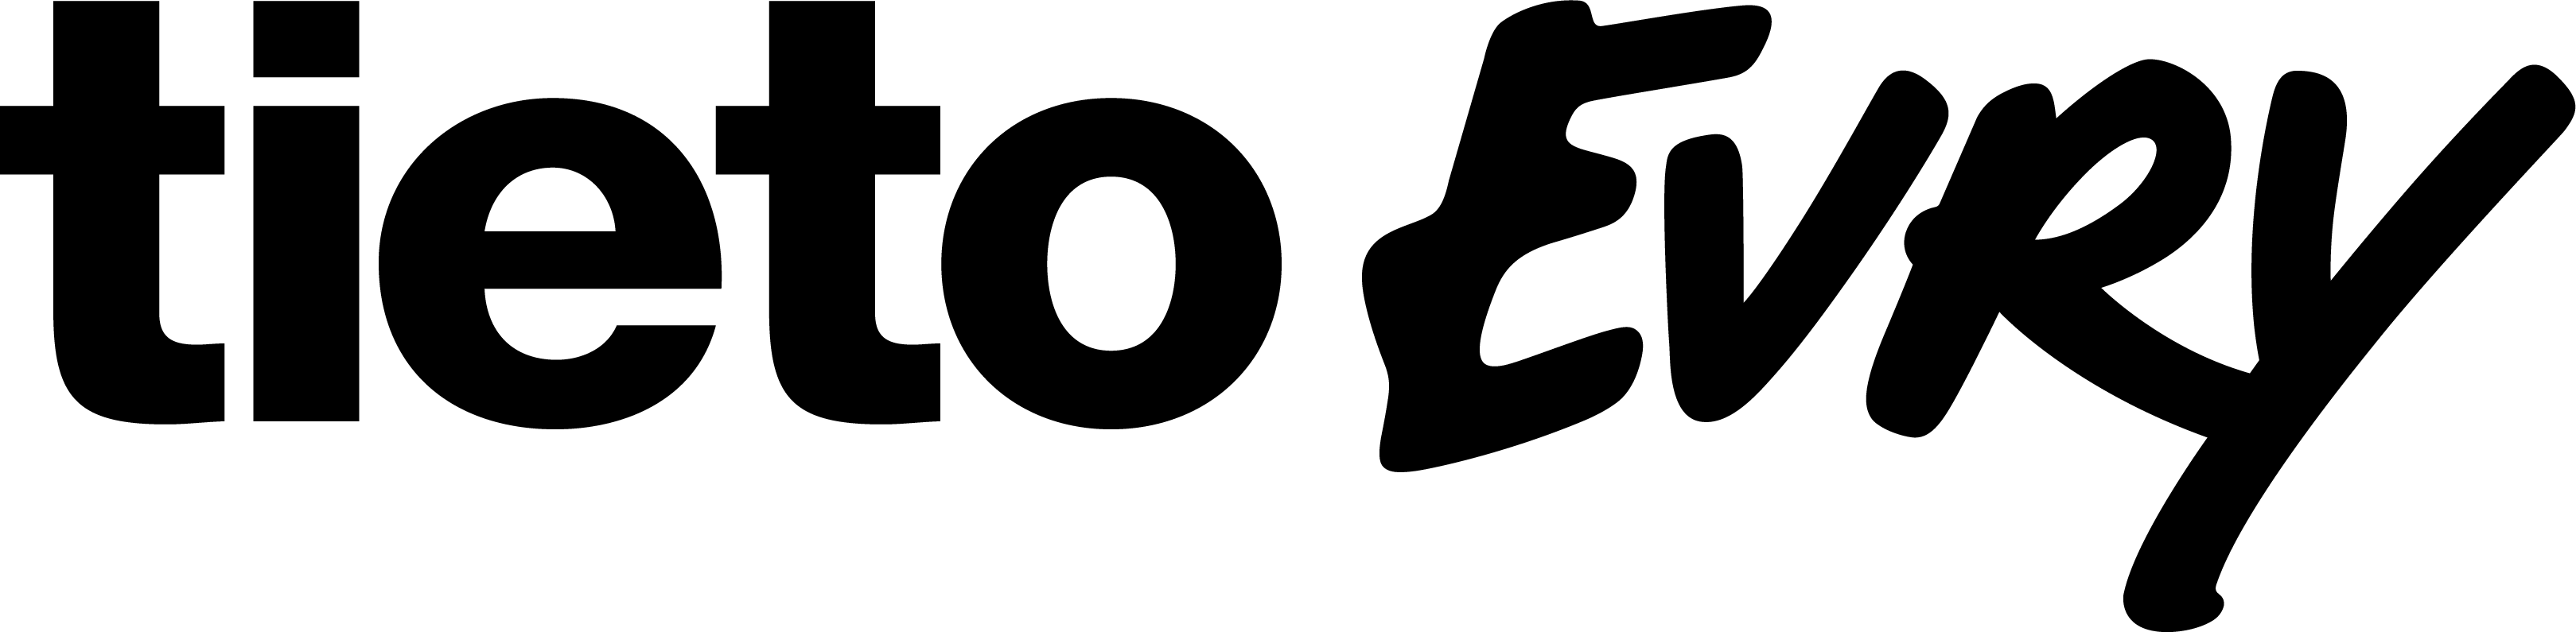 tietoevry-logo-black-rgb-m-1.png